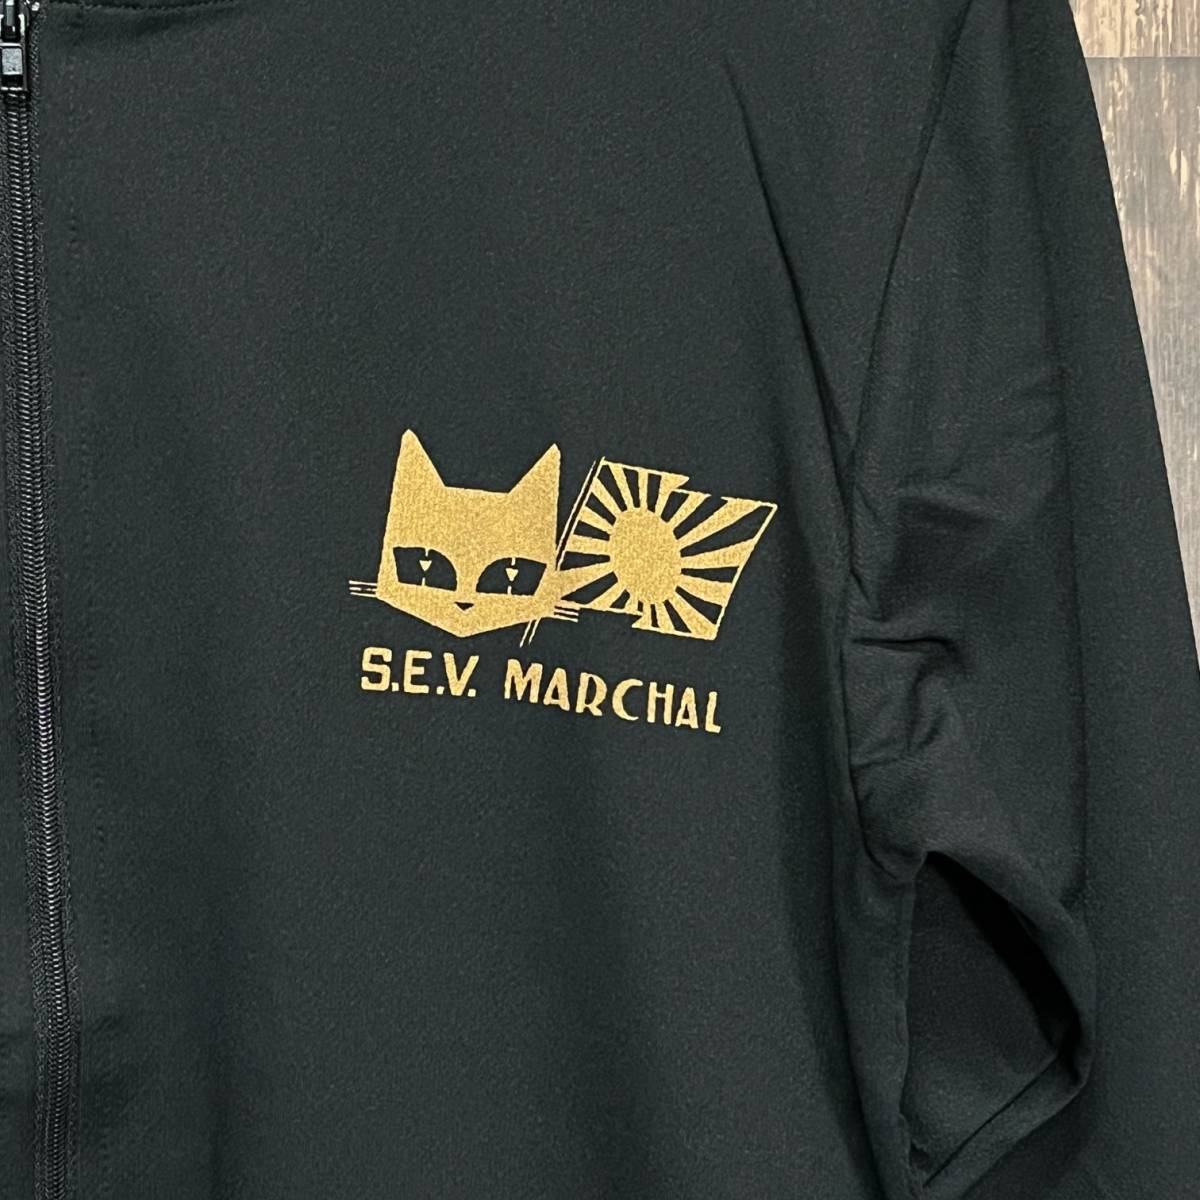 S.E.V MARCHAR・マーシャル・日章旗・ゴールド・ジップパーカー・黒・XL_画像4